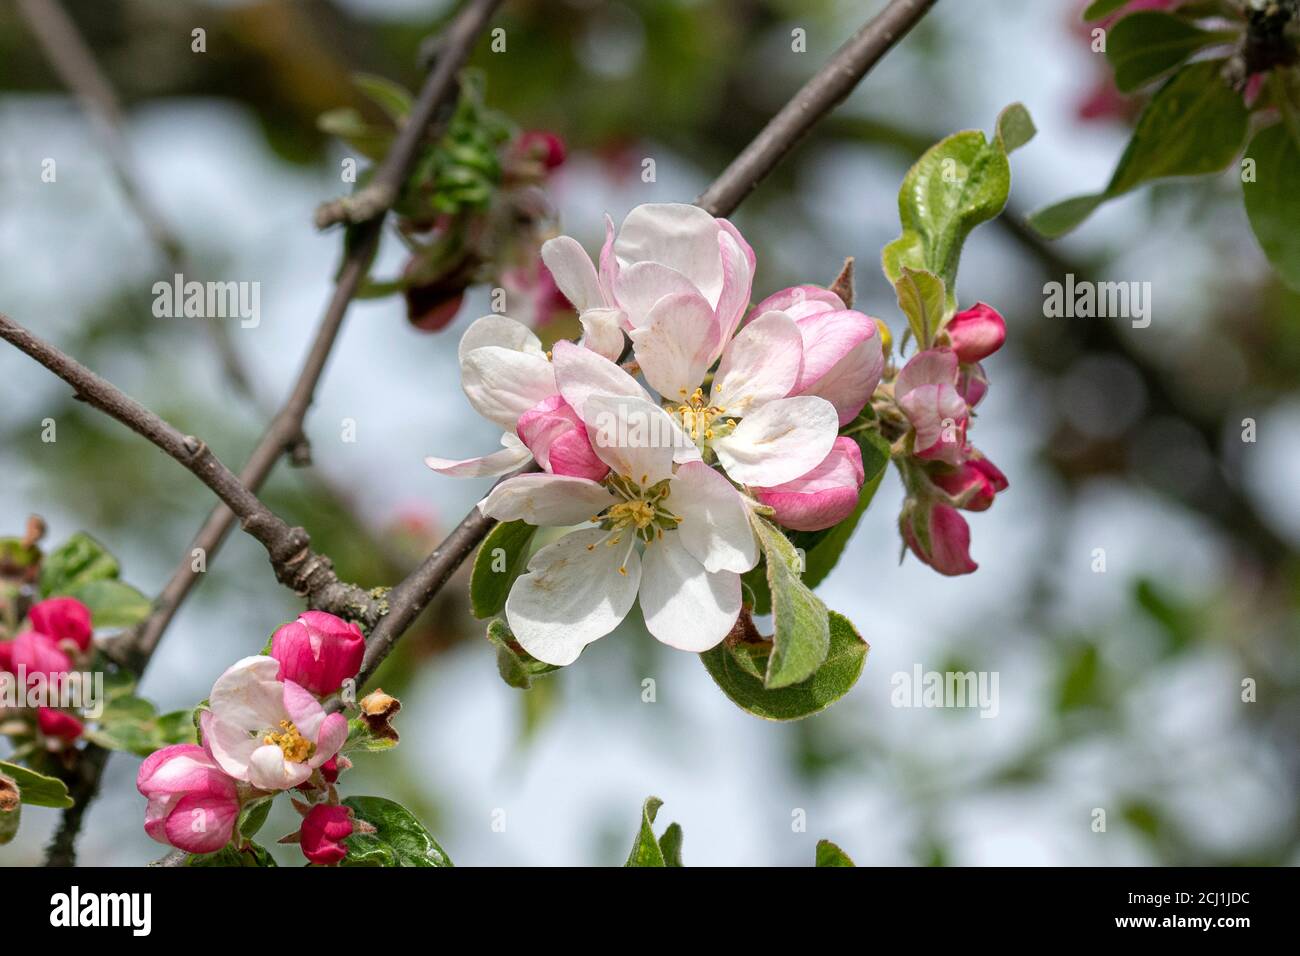 Ornamental apple tree (Malus 'Striped Beauty', Malus Striped Beauty), blooming branch of cultivar Striped Beauty Stock Photo